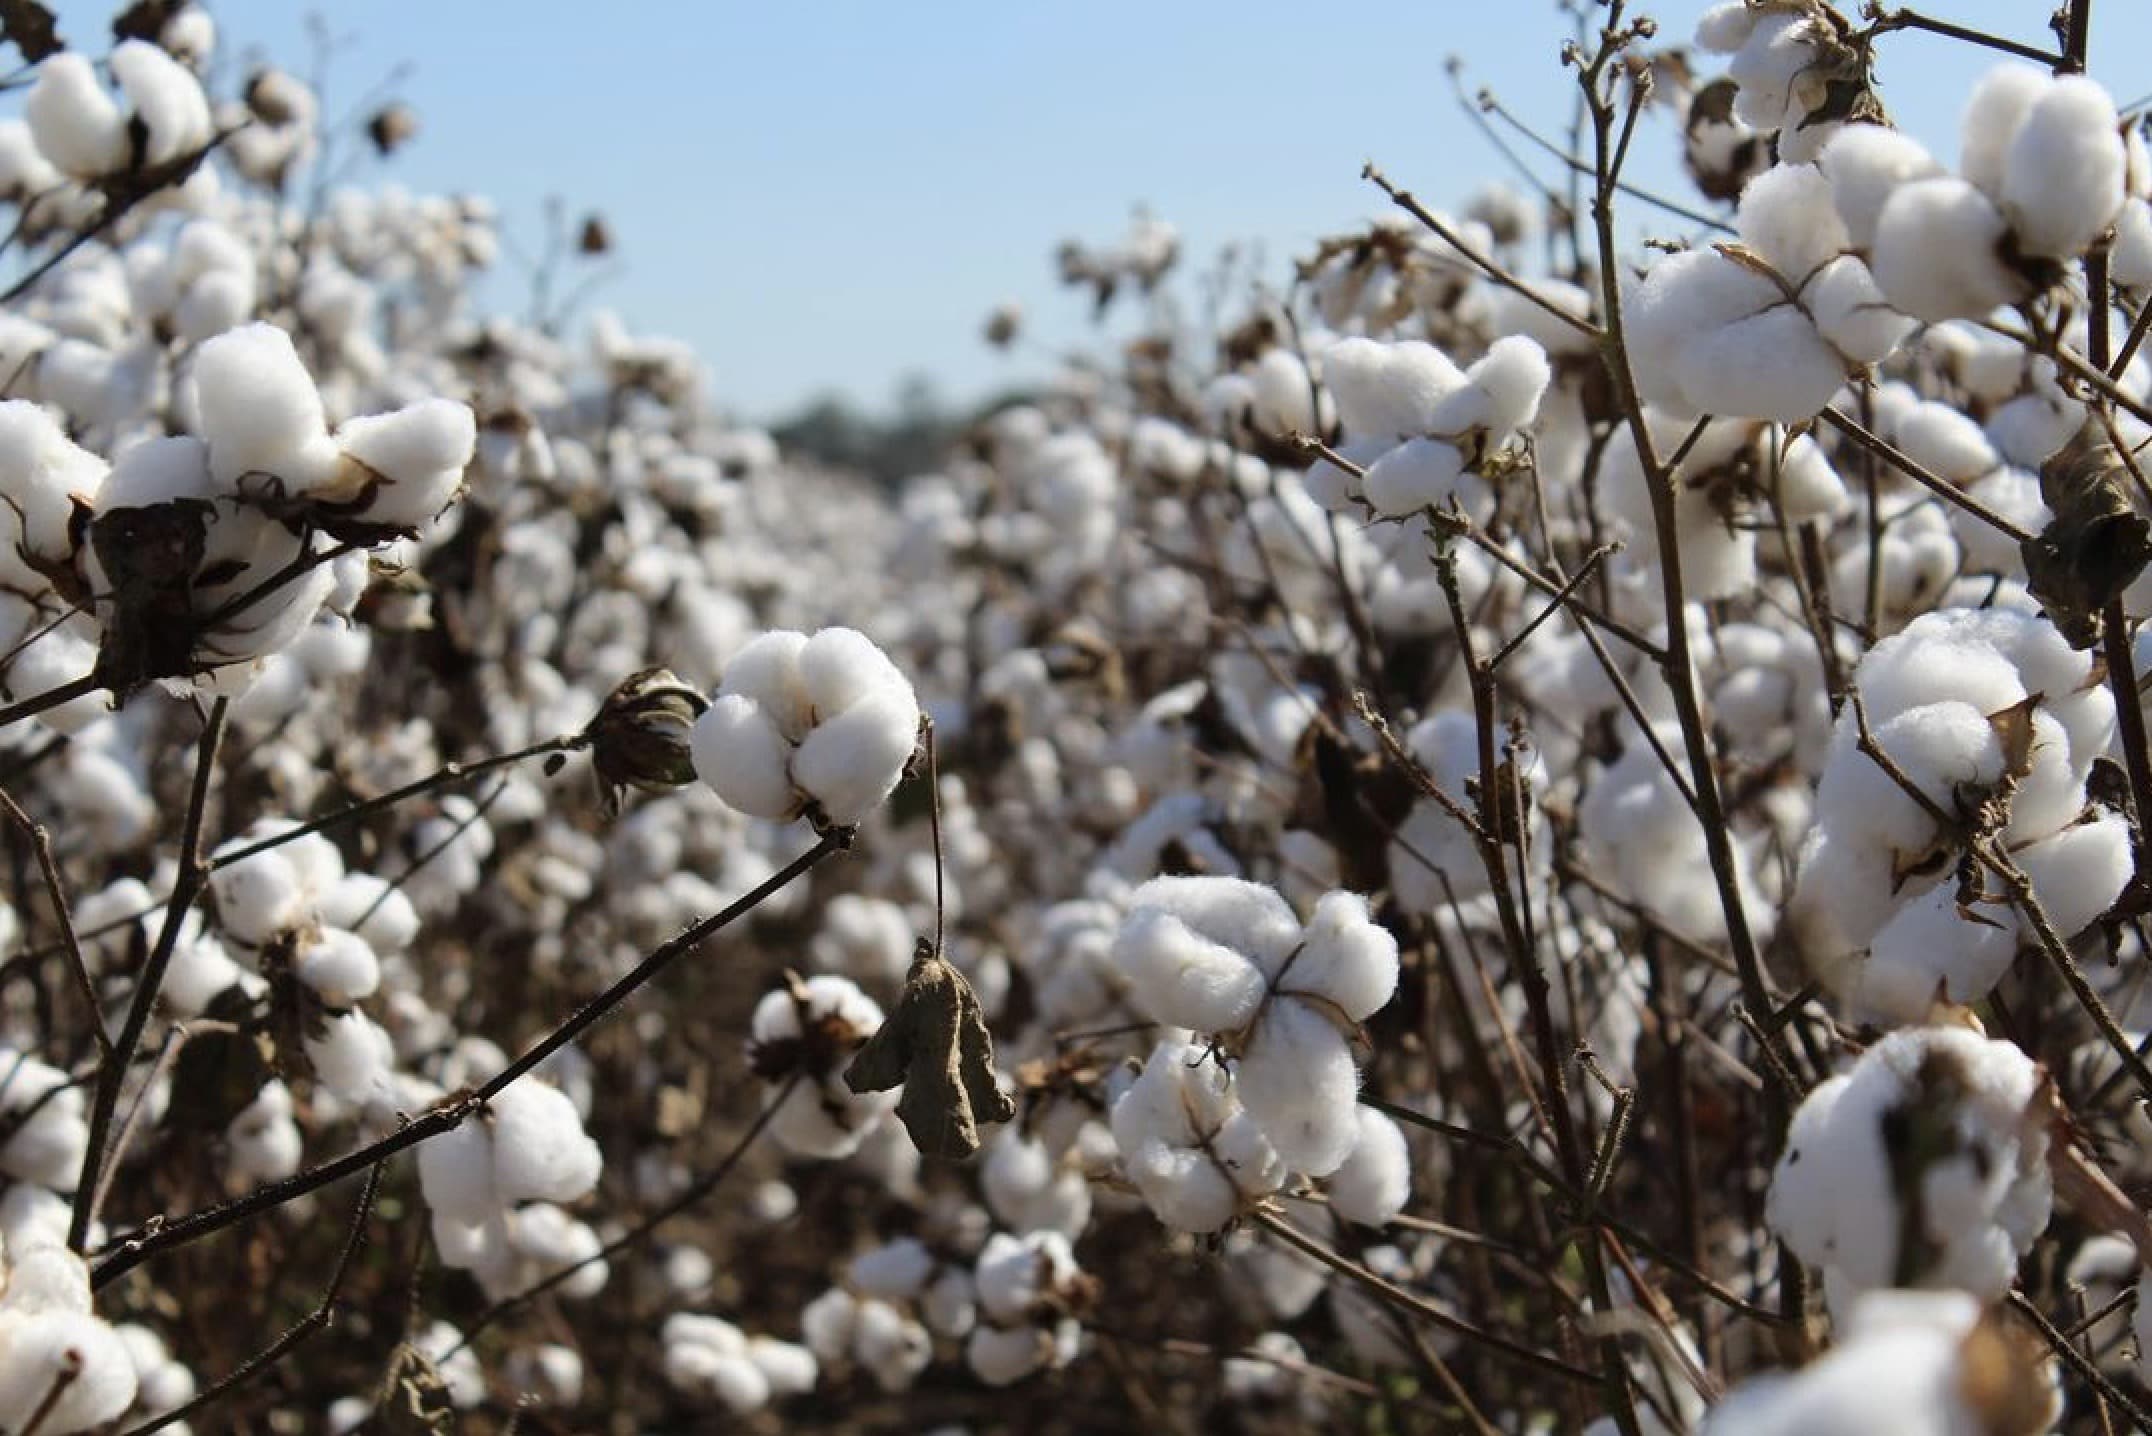 Cotton plants growing in a field under blue sky